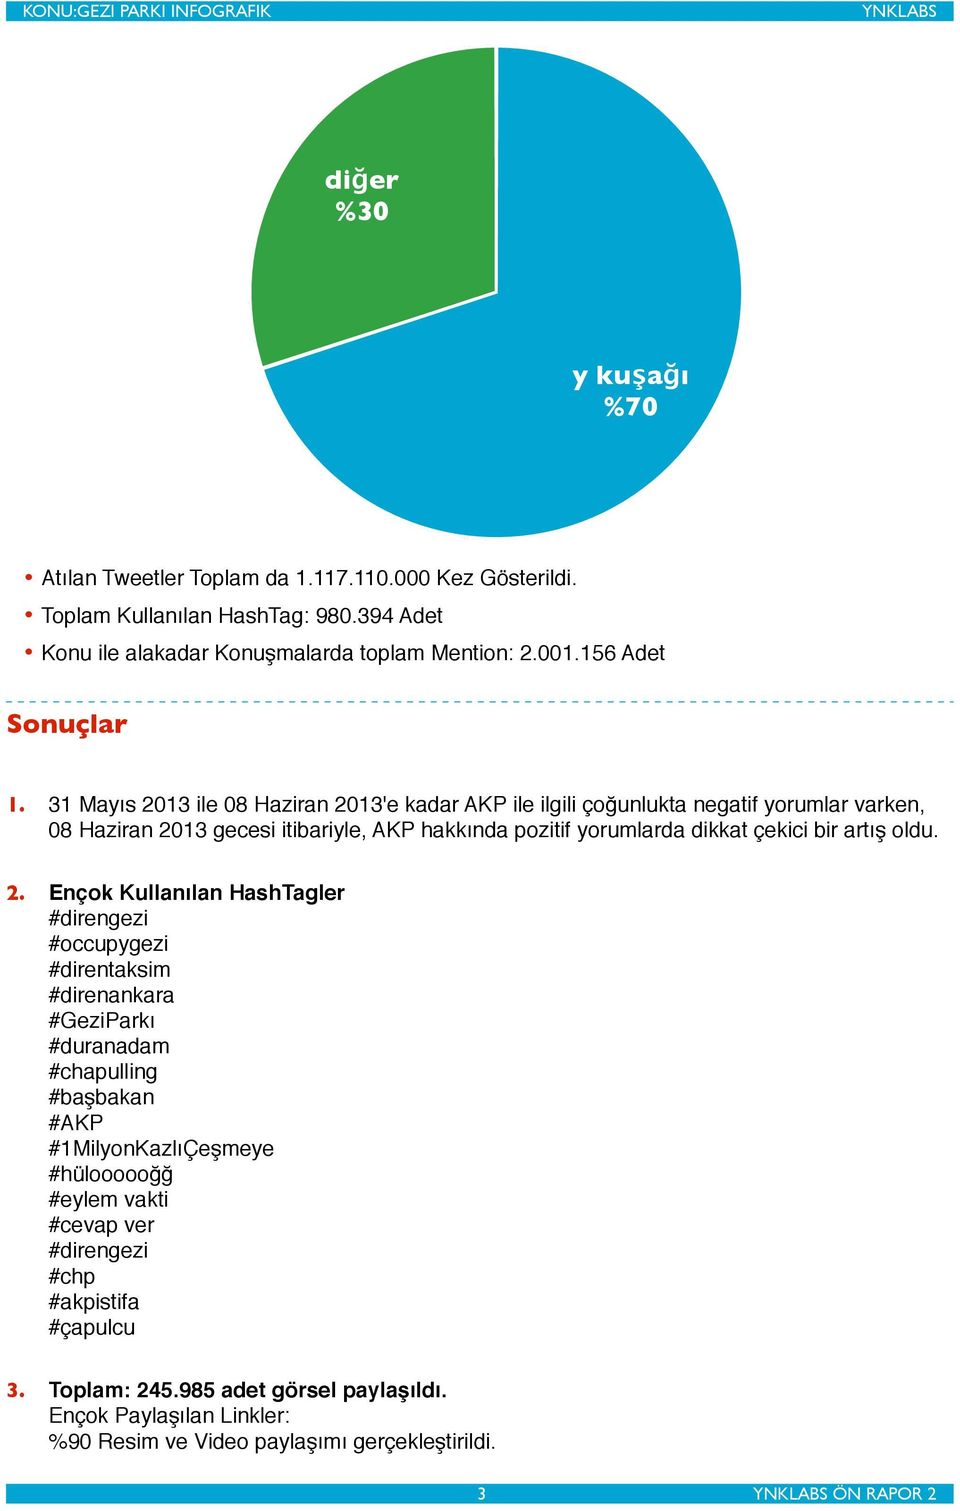 31 Mayıs 2013 ile 08 Haziran 2013'e kadar AKP ile ilgili çoğunlukta negatif yorumlar varken, 08 Haziran 2013 gecesi itibariyle, AKP hakkında pozitif yorumlarda dikkat çekici bir artış